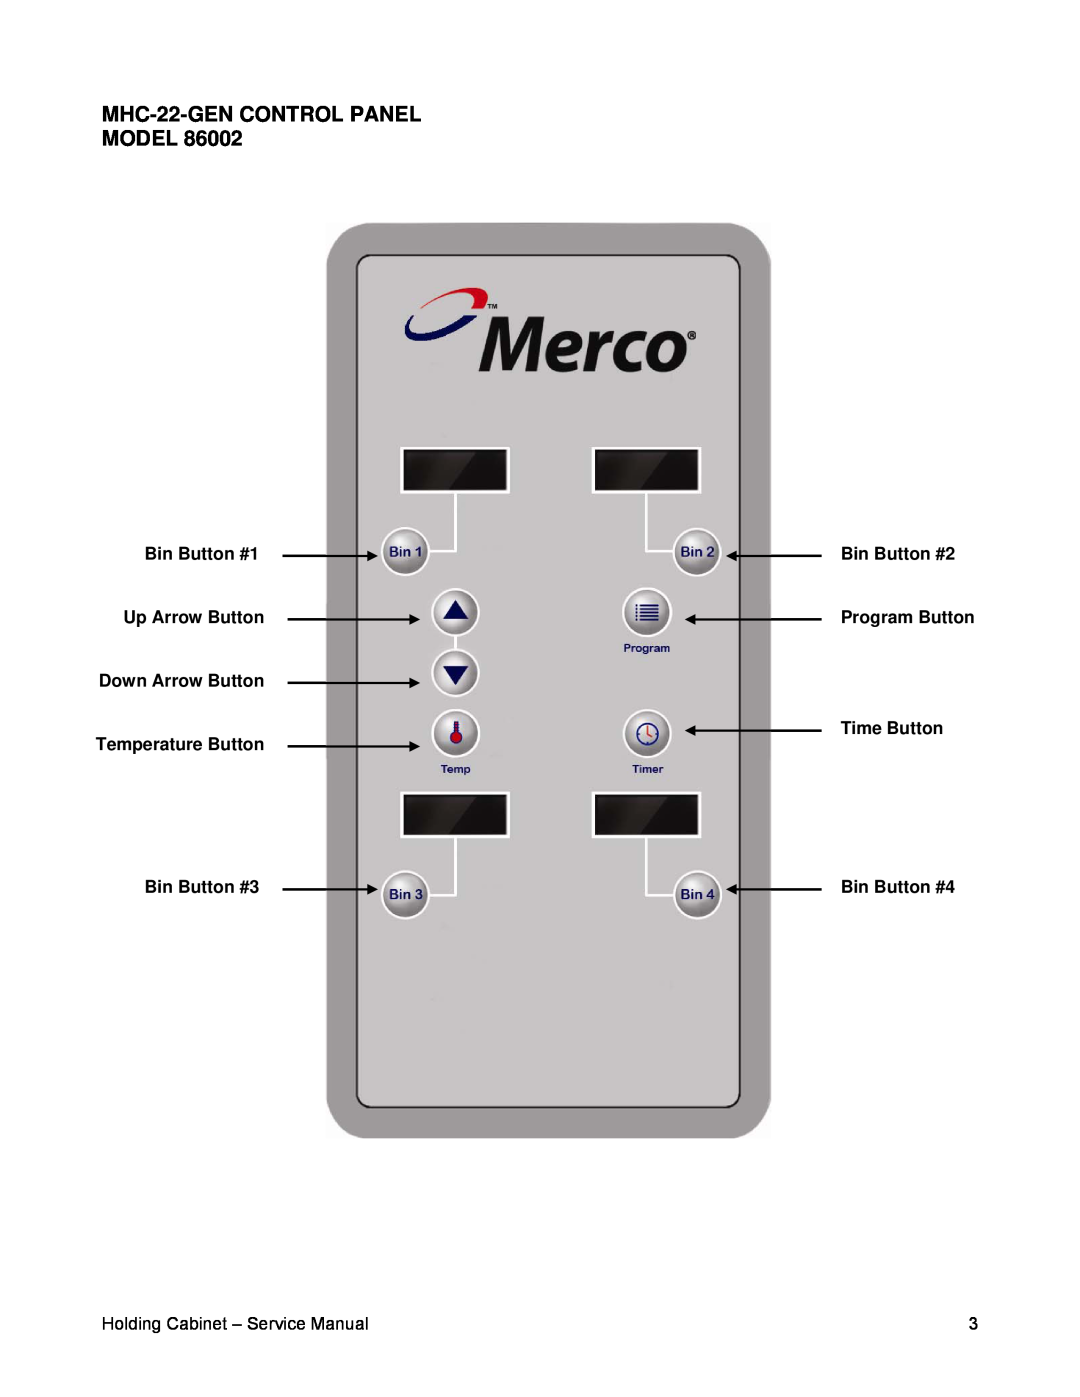 Merco Savory 86002 MHC-22-GENCONTROL PANEL MODEL, Bin Button #1, Bin Button #2, Up Arrow Button, Program Button 